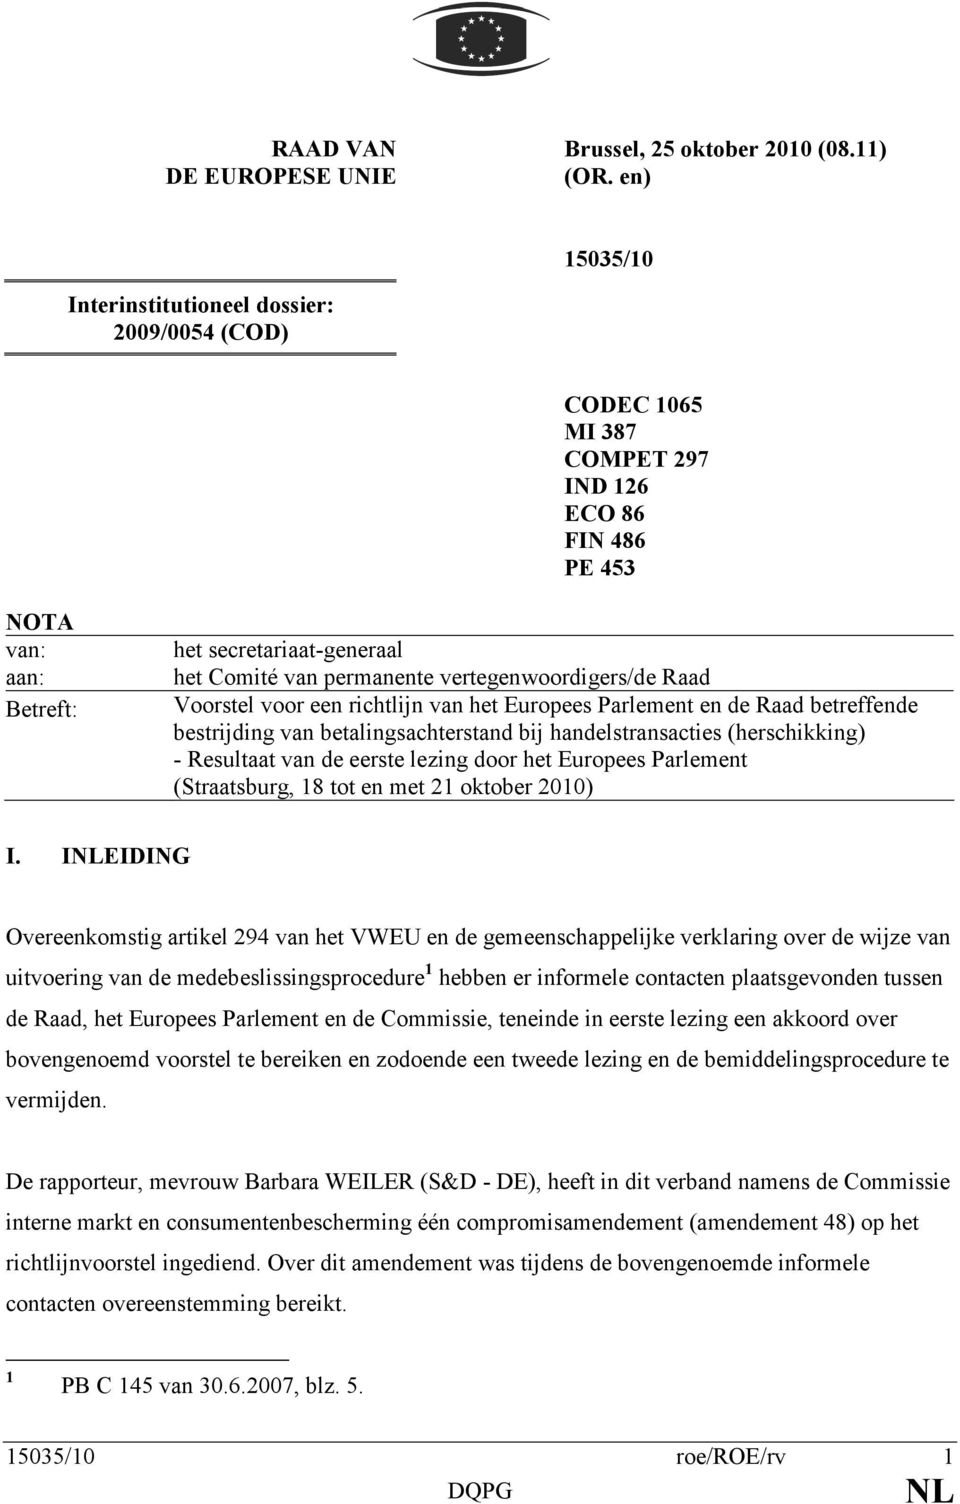 vertegenwoordigers/de Raad Voorstel voor een richtlijn van het Europees Parlement en de Raad betreffende bestrijding van betalingsachterstand bij handelstransacties (herschikking) - Resultaat van de